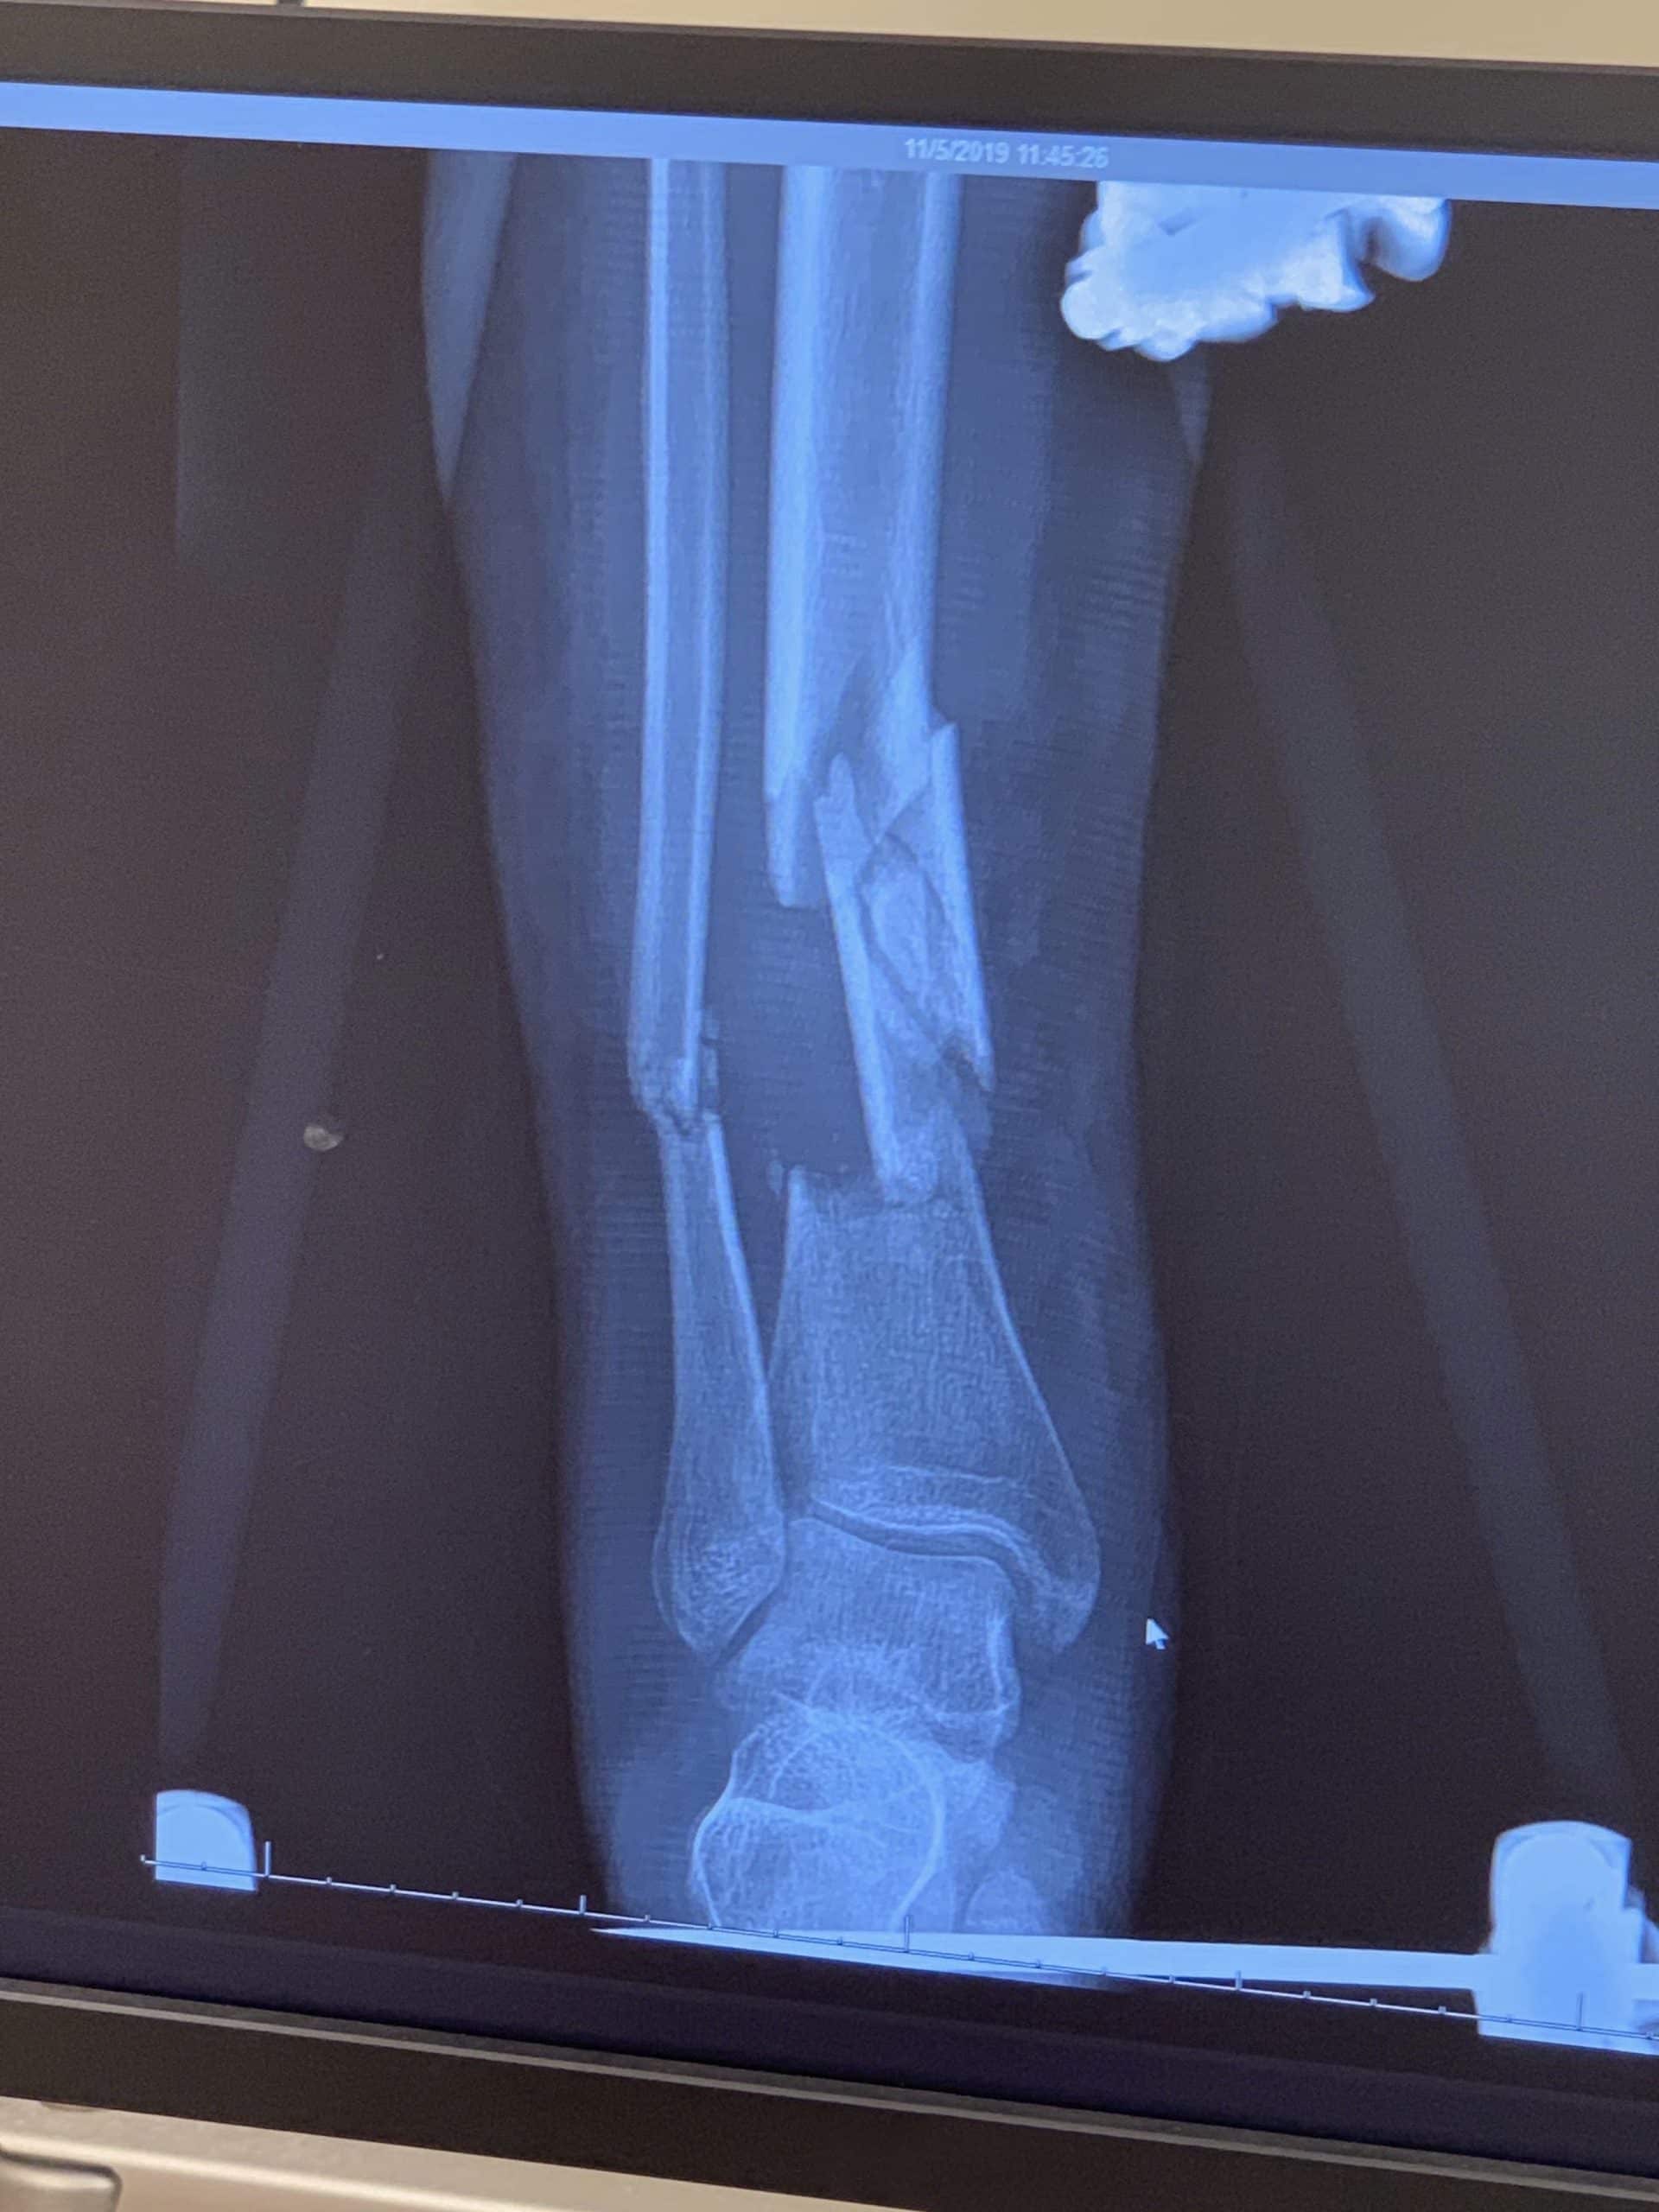 x ray broken foot